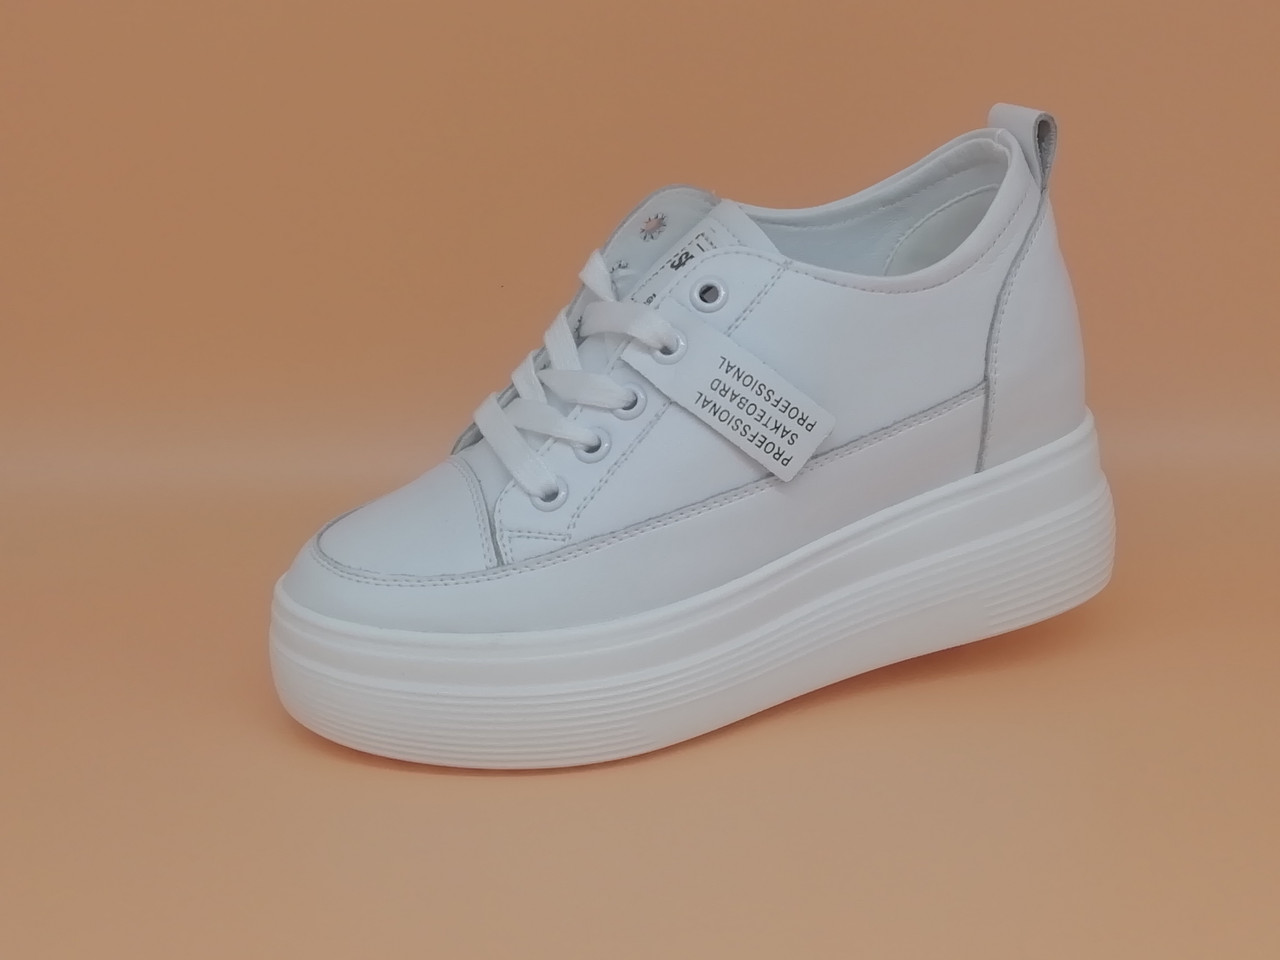 Білі кросівки. Маленькі (33 - 35) і стандартні (36 - 40) розміри.